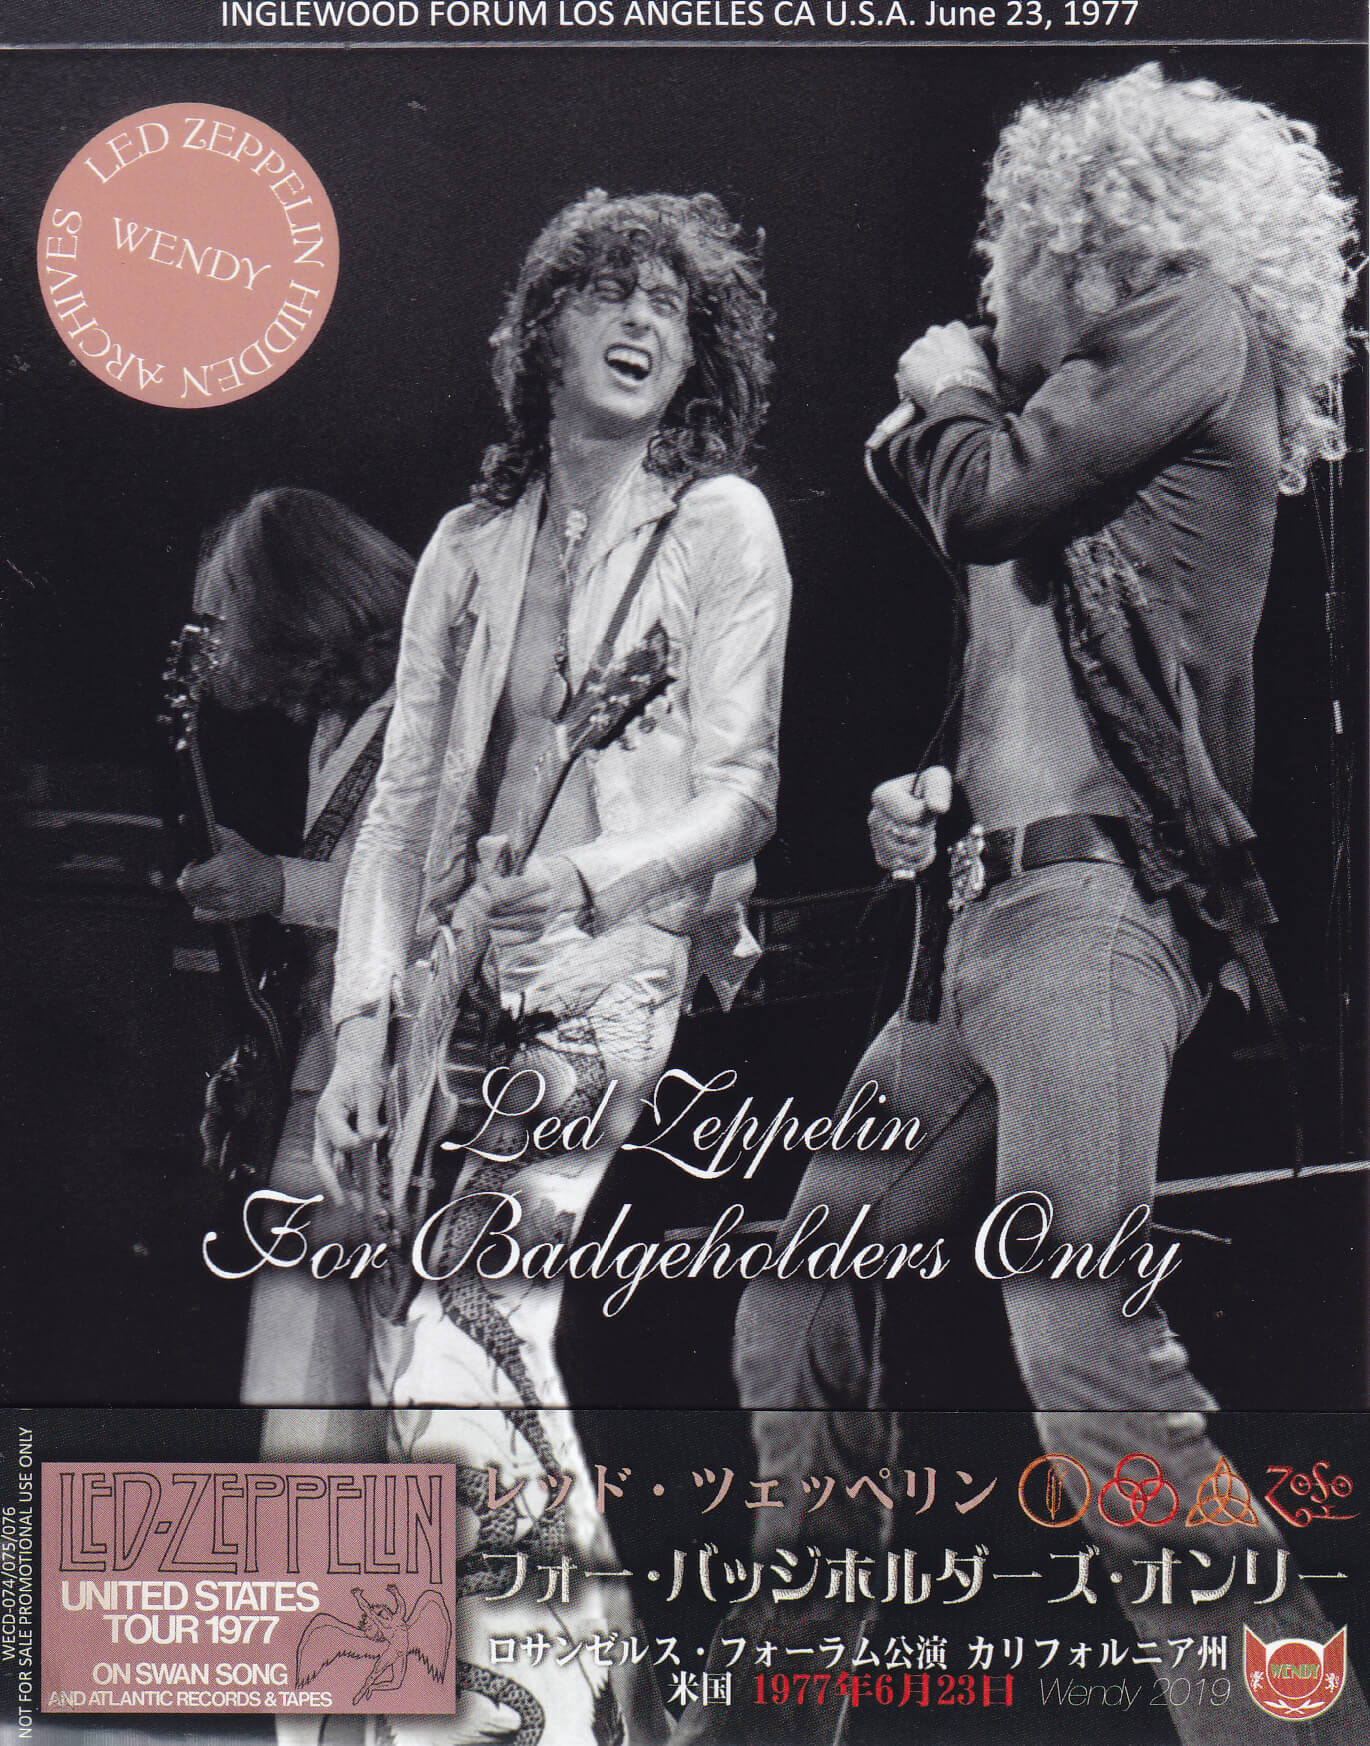 Led Zeppelin / For Badgeholders Only / 3CD With OBI Strip – GiGinJapan